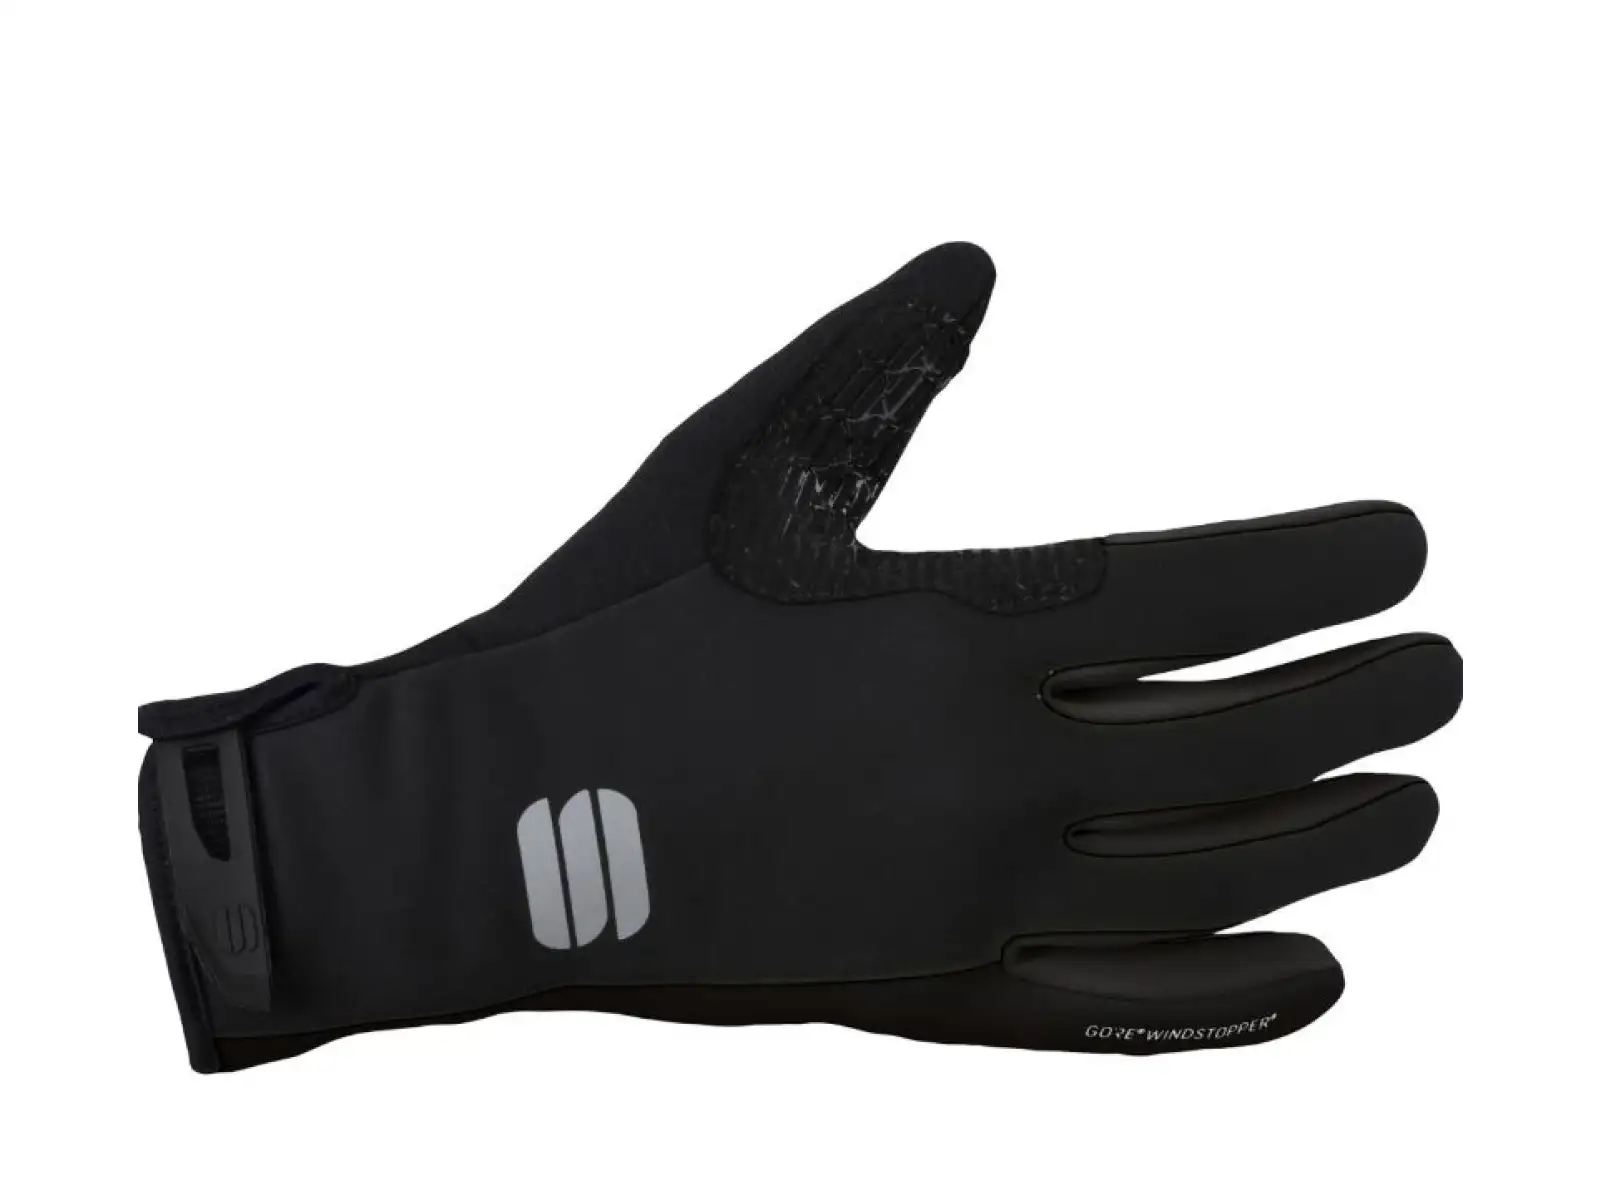 Sportful Windstopper Essential 2 dámské rukavice Black